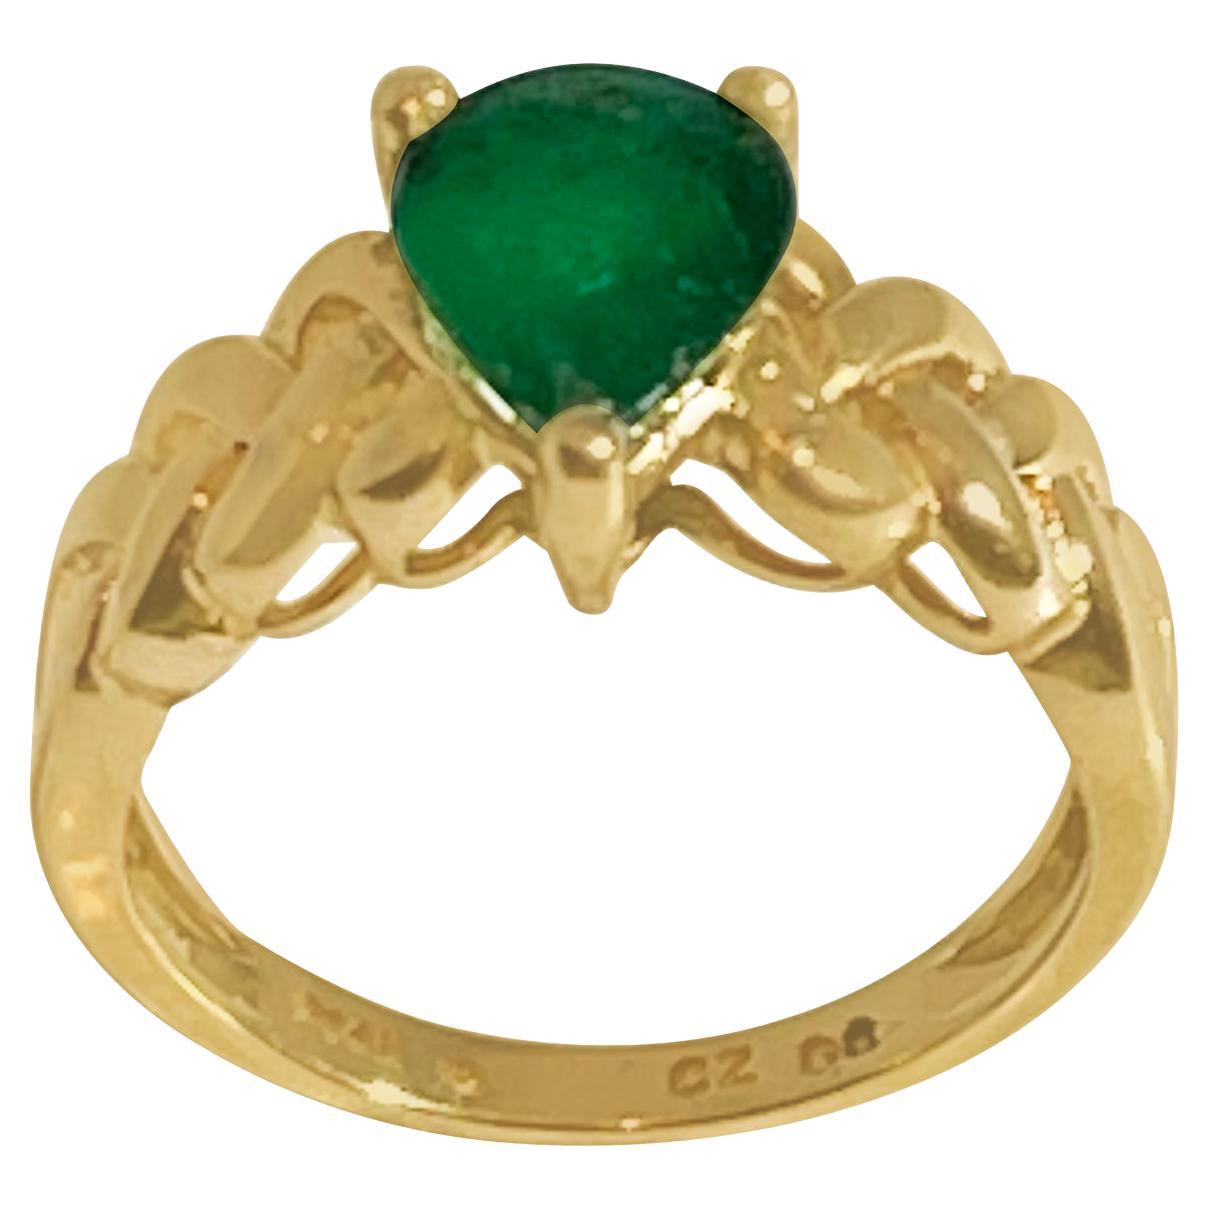 1.42 Carat Pear Cut Natural Emerald Ring 14 Karat Yellow Gold